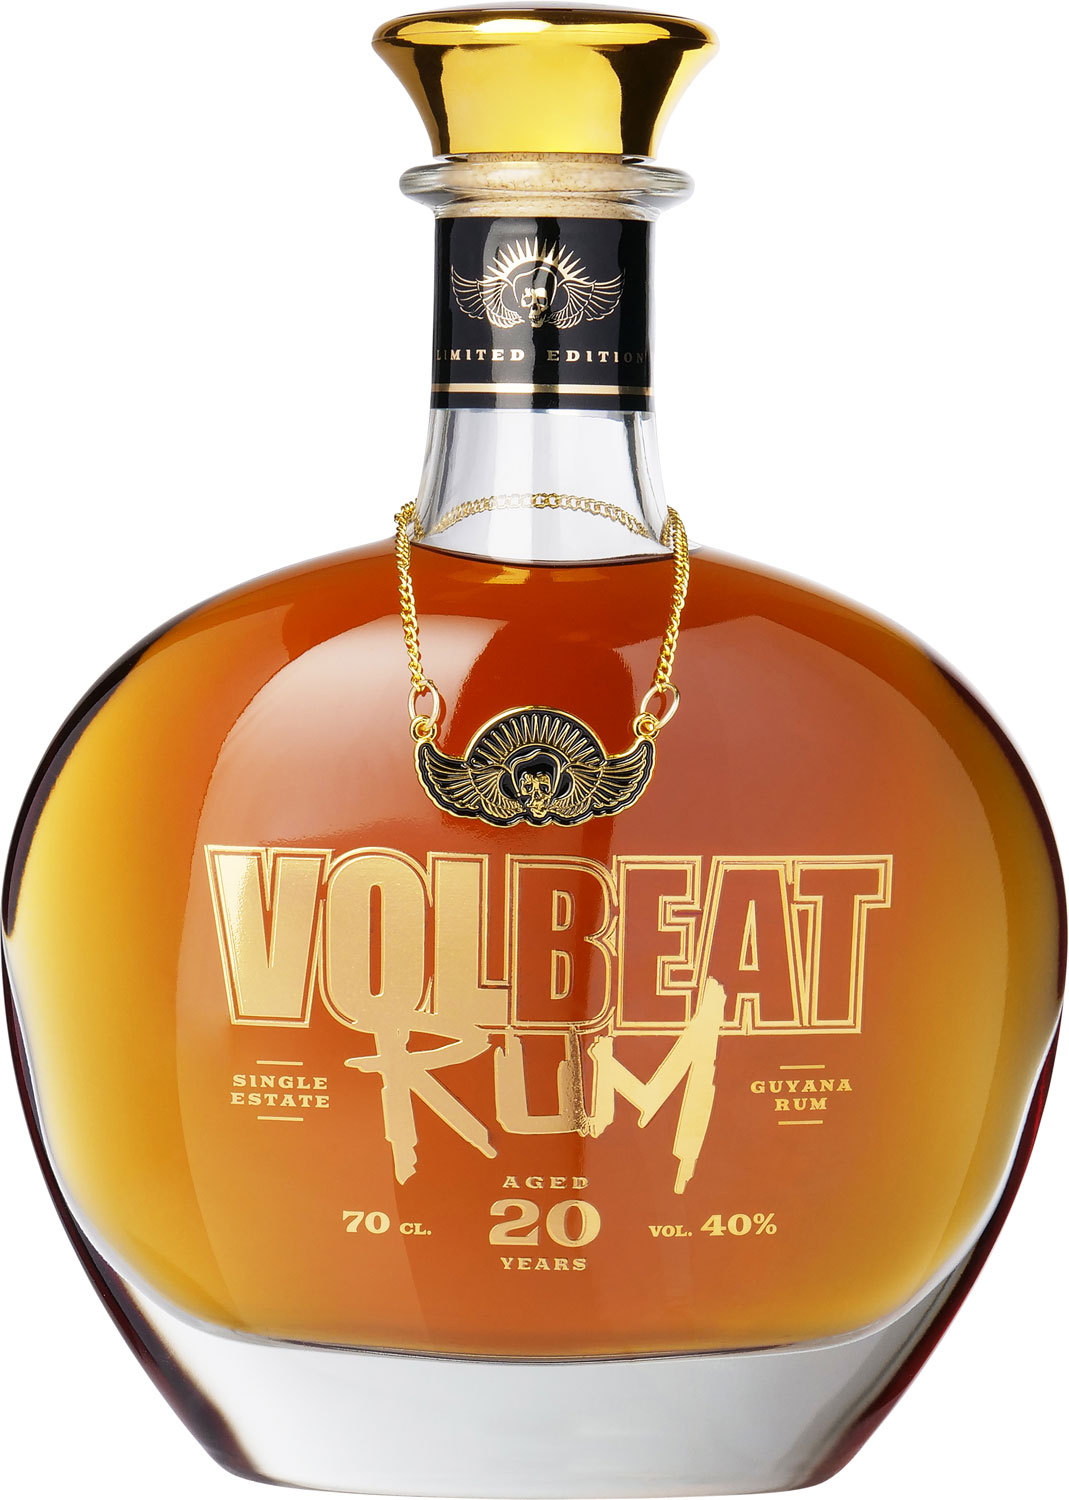 Volbeat Rum 20 Years